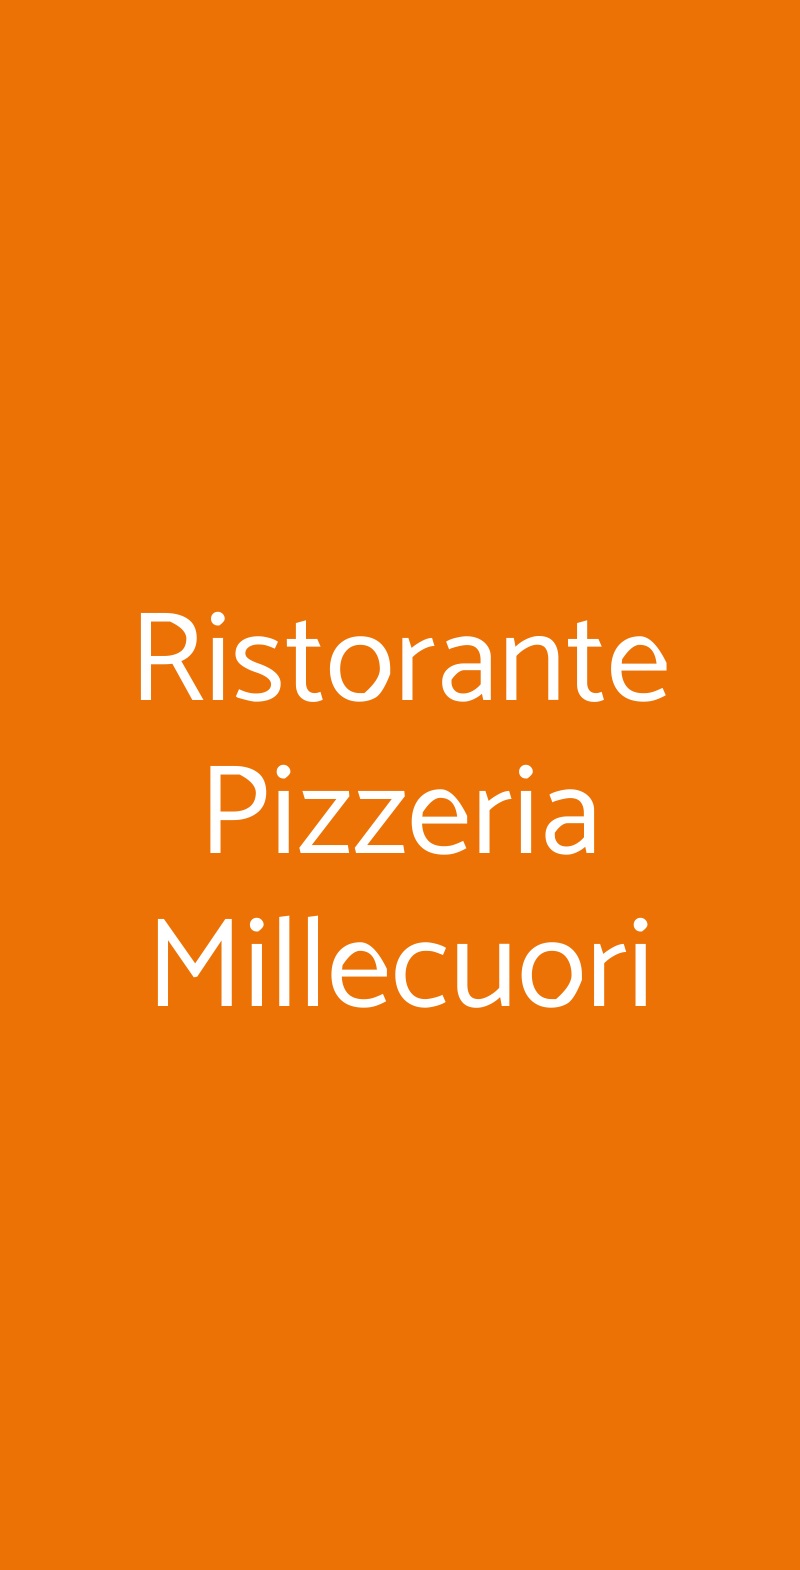 Ristorante Pizzeria Millecuori Sassuolo menù 1 pagina